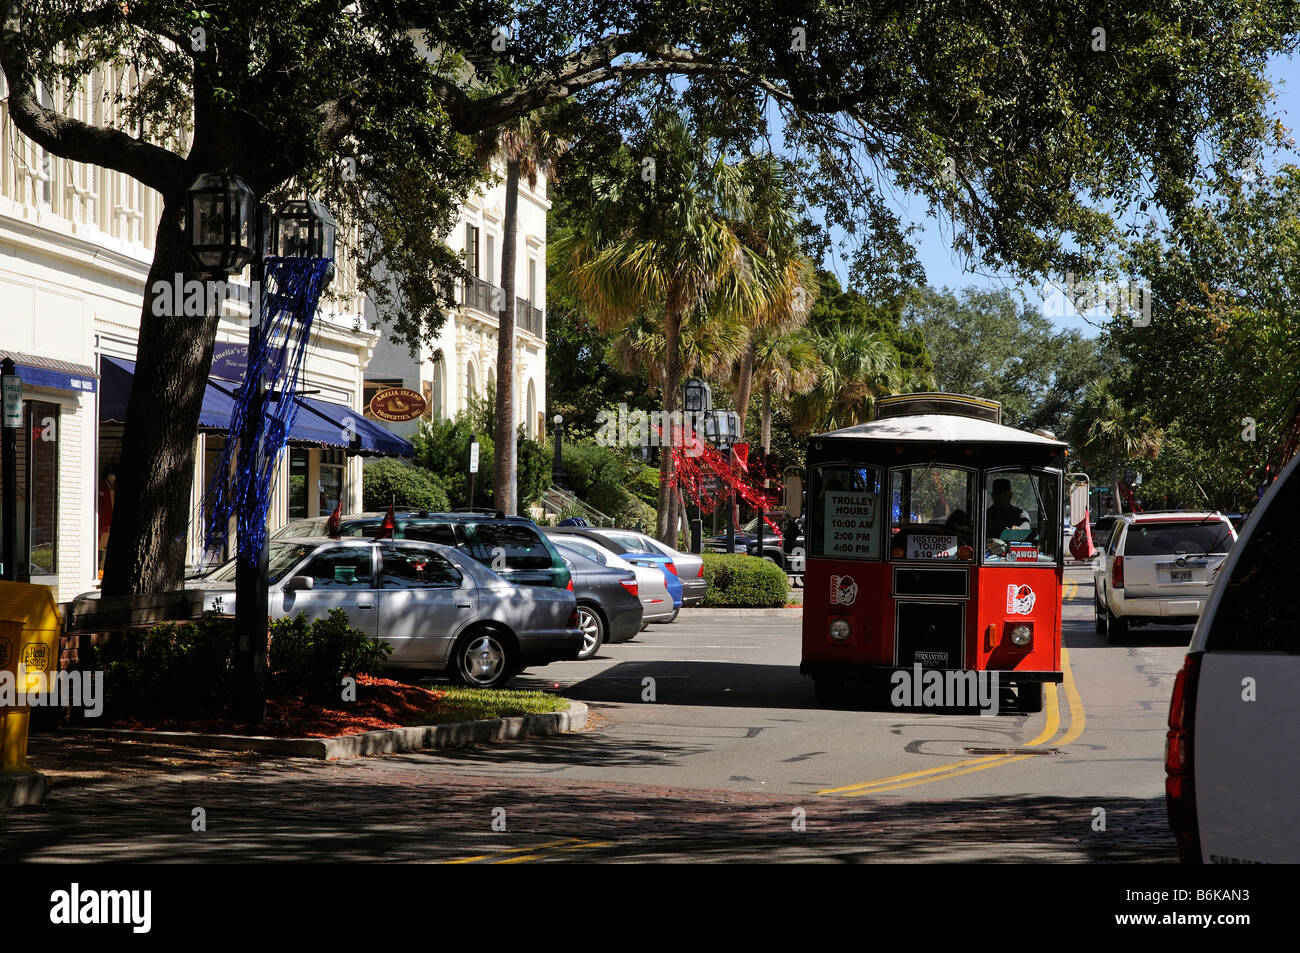 Les propriétés du centre-ville de Amelia Island Fernandina Beach Floride USA et trolley touristique Banque D'Images